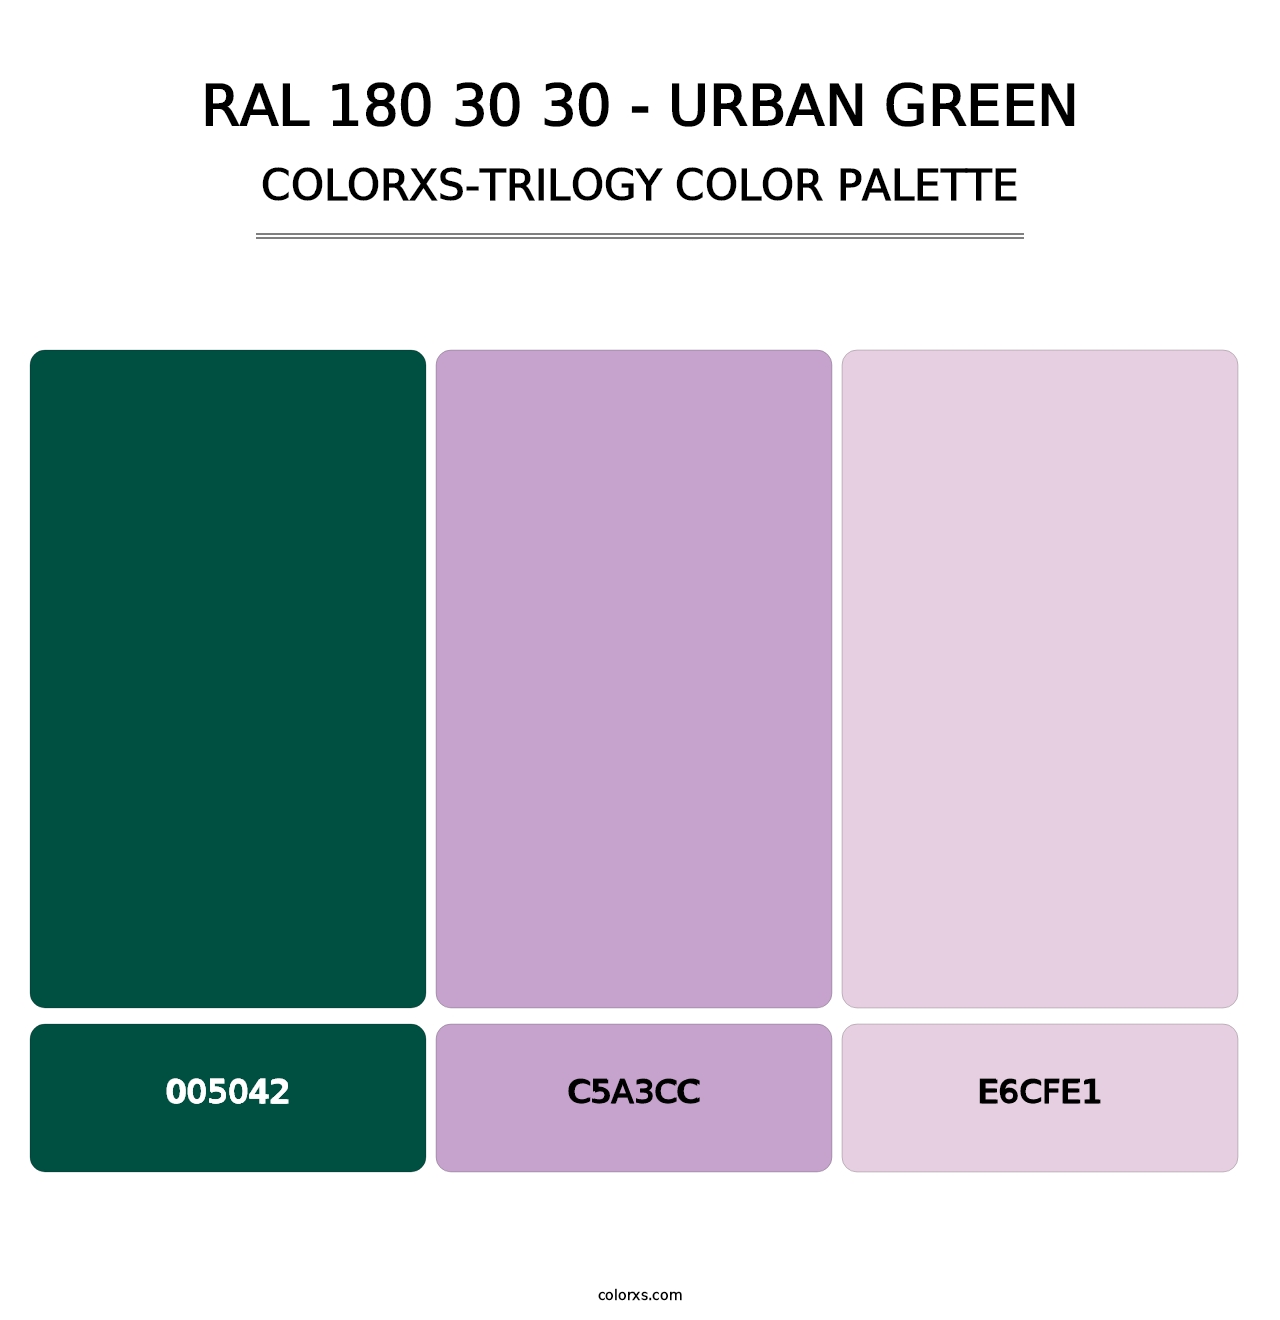 RAL 180 30 30 - Urban Green - Colorxs Trilogy Palette